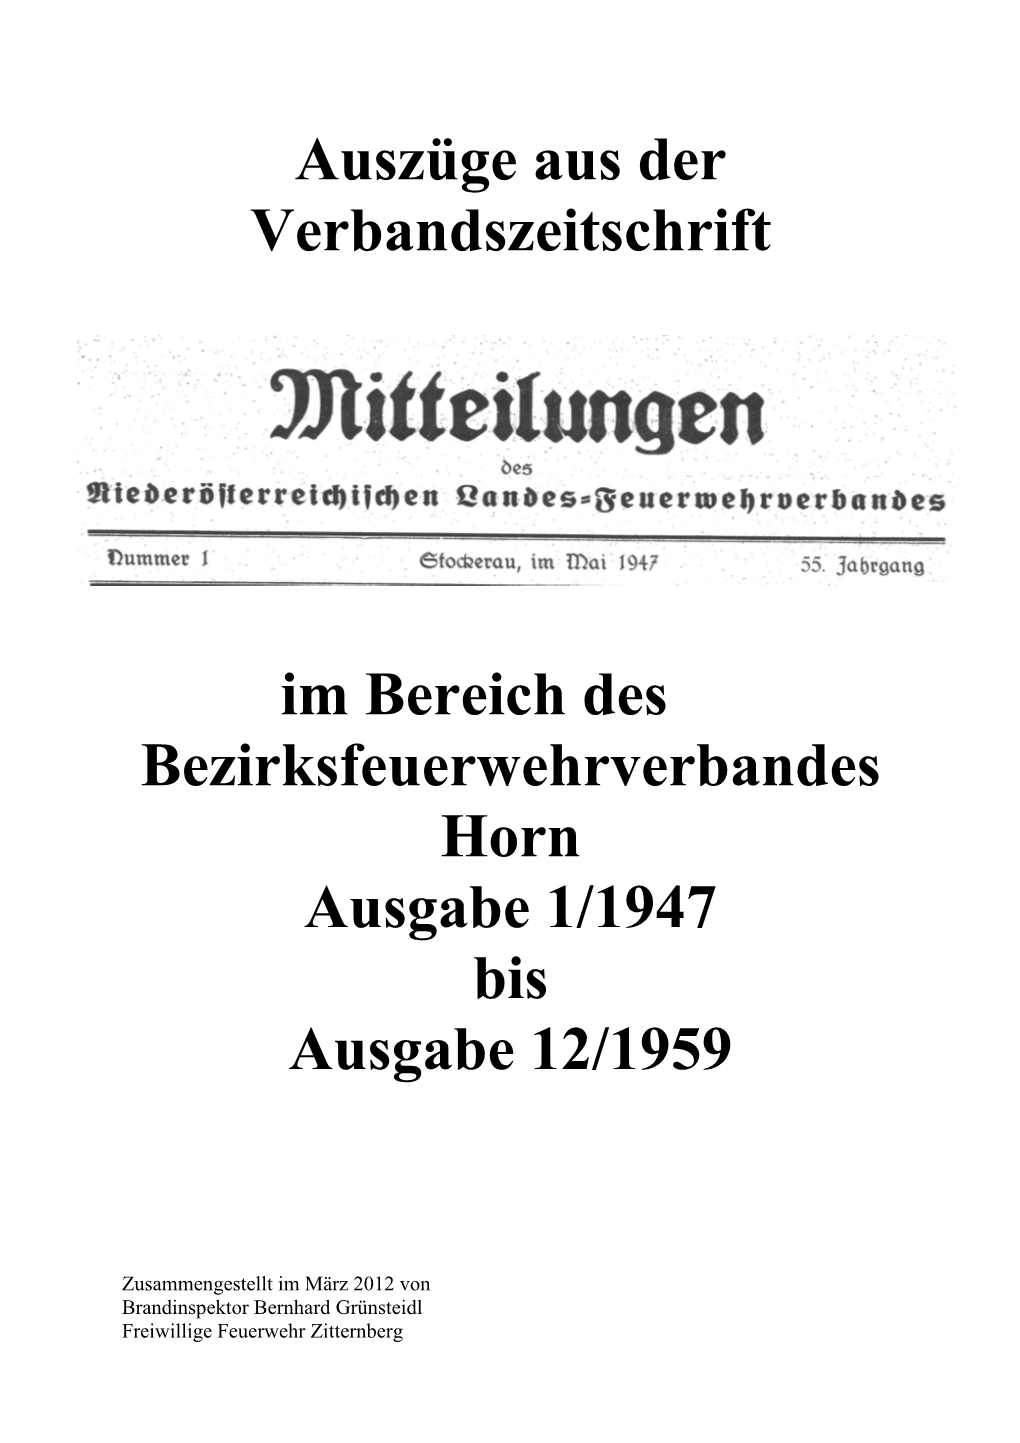 Mittheilungen 1947-1959